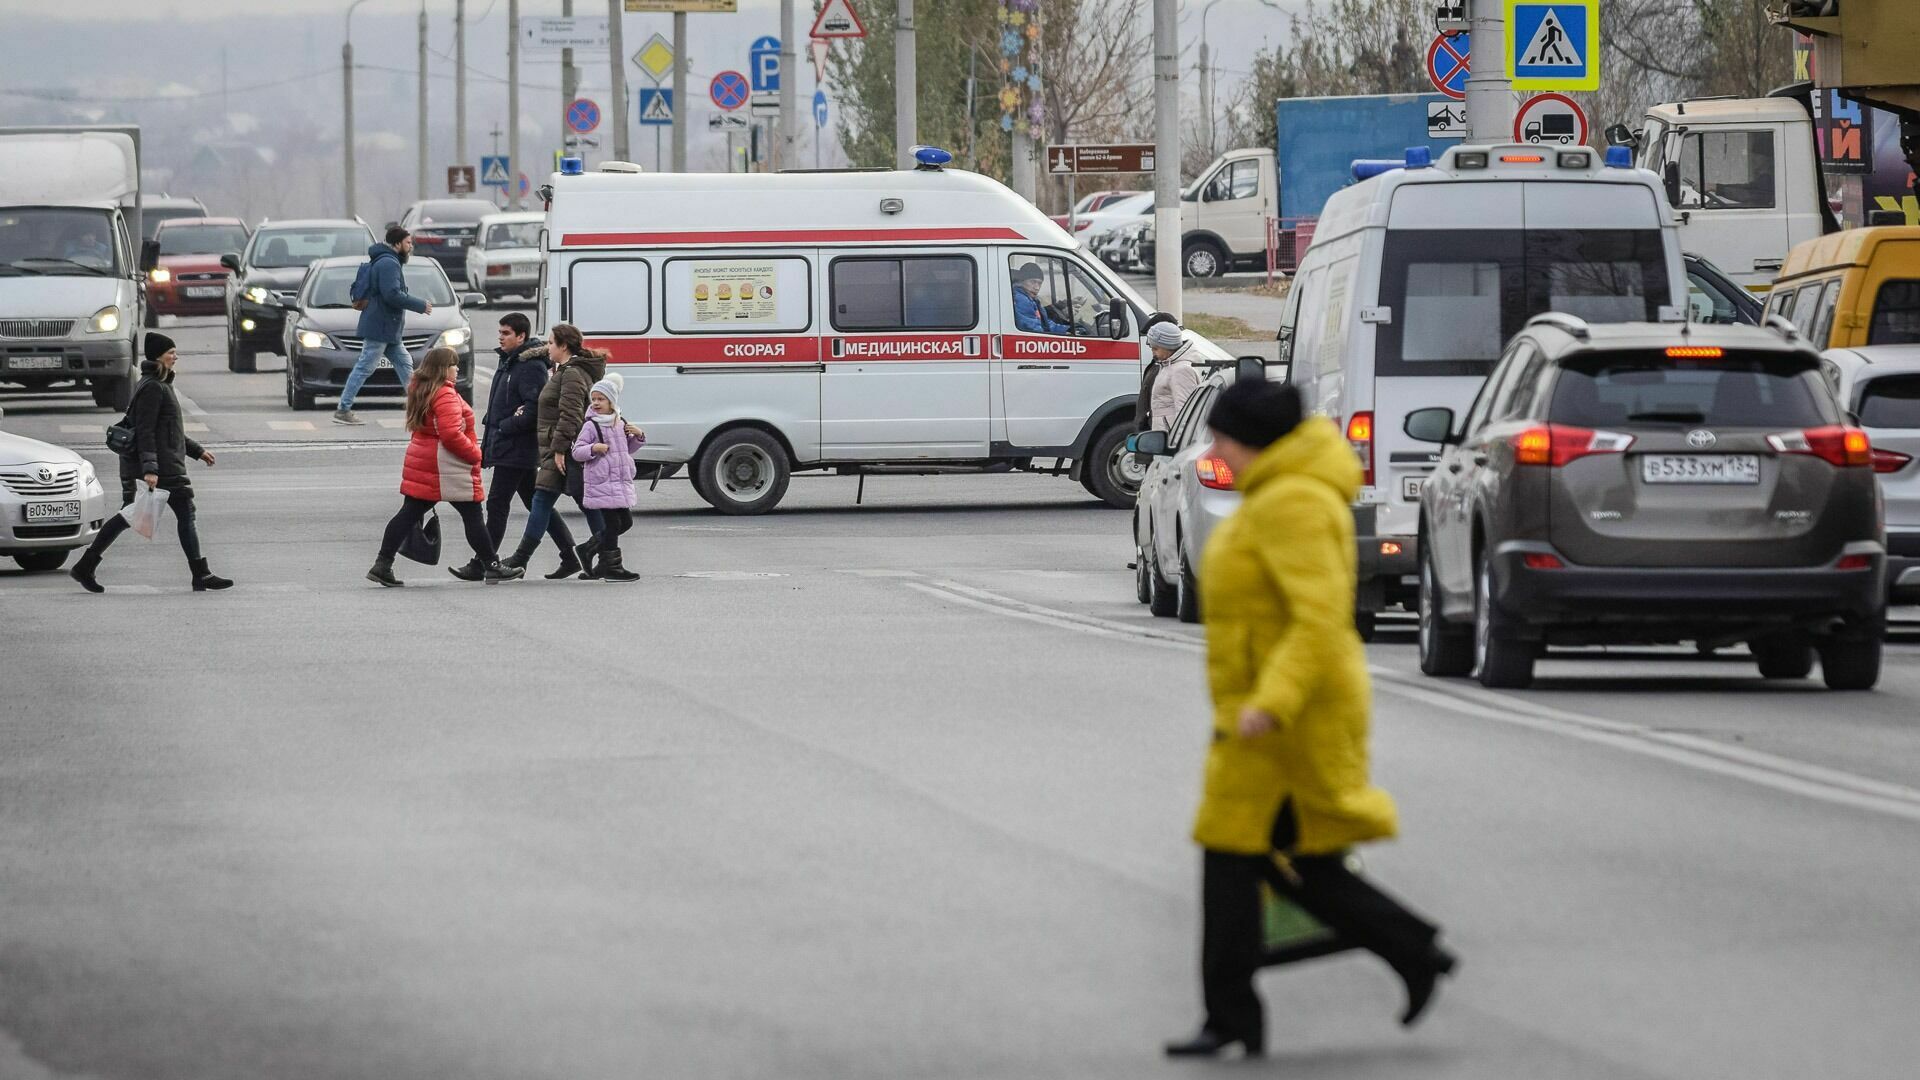 Таксист протащил пенсионерку по дороге в Волжском и скрылся